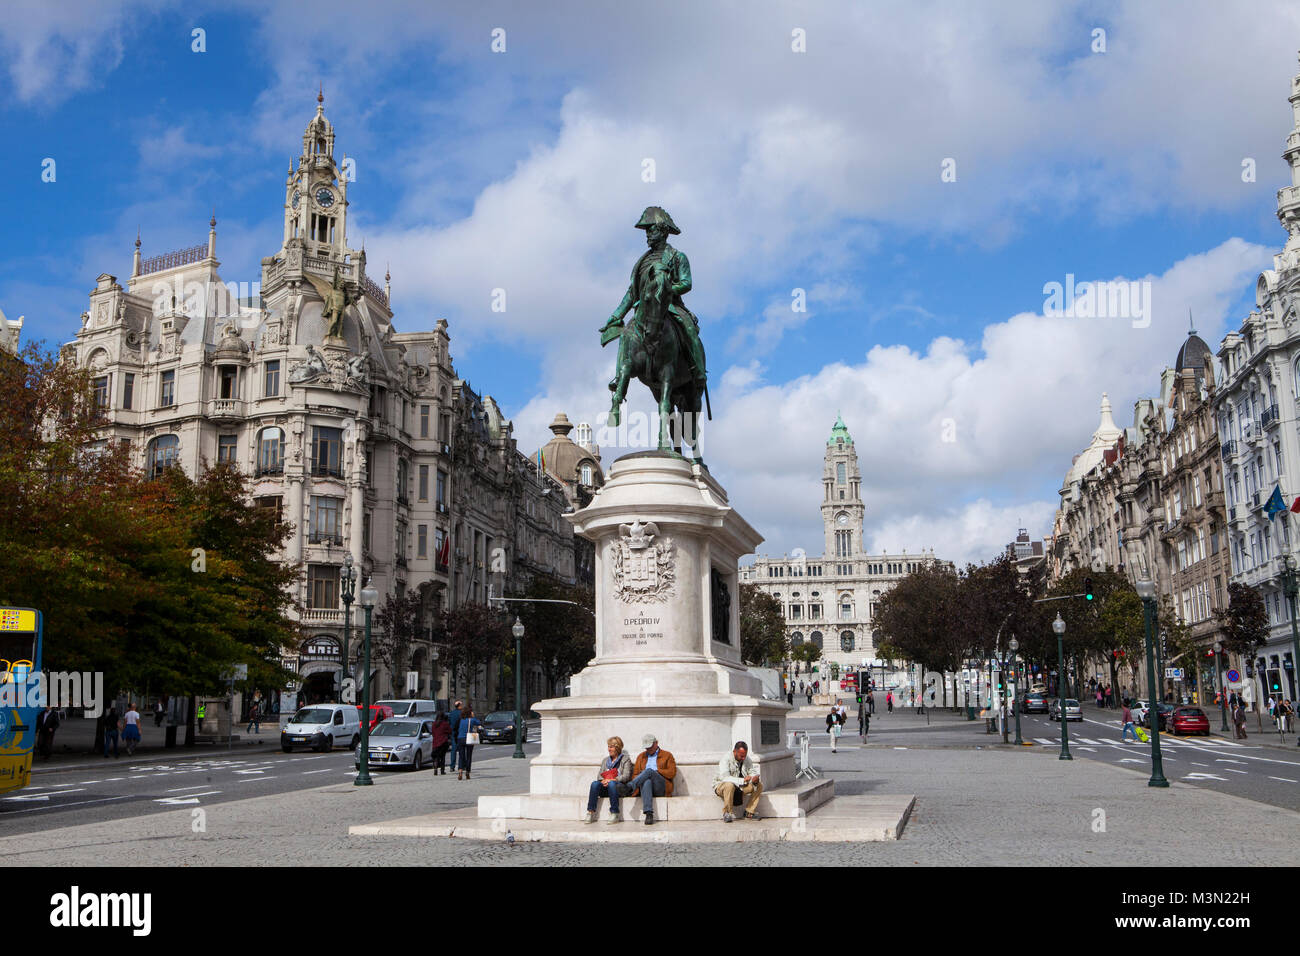 PORTO, Portogallo - 06 October, 2015: la statua equestre in bronzo di Pietro IV del Portogallo in porto, scolpito da Celestin Anatole Calmels nel 1866. Foto Stock